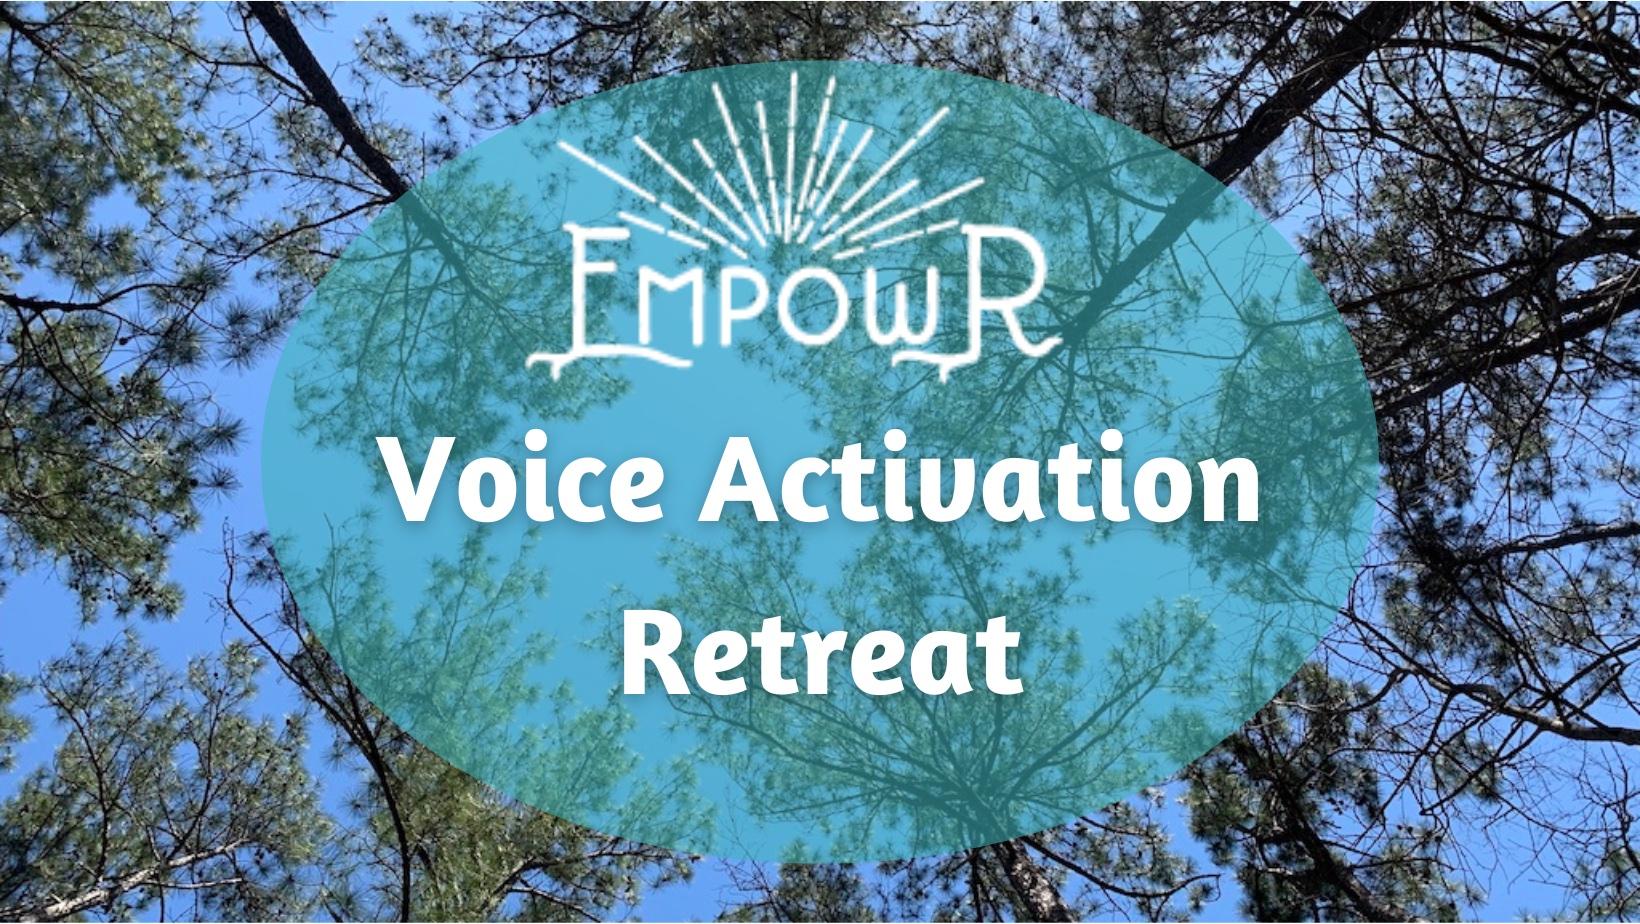 Voice Activation Retreat